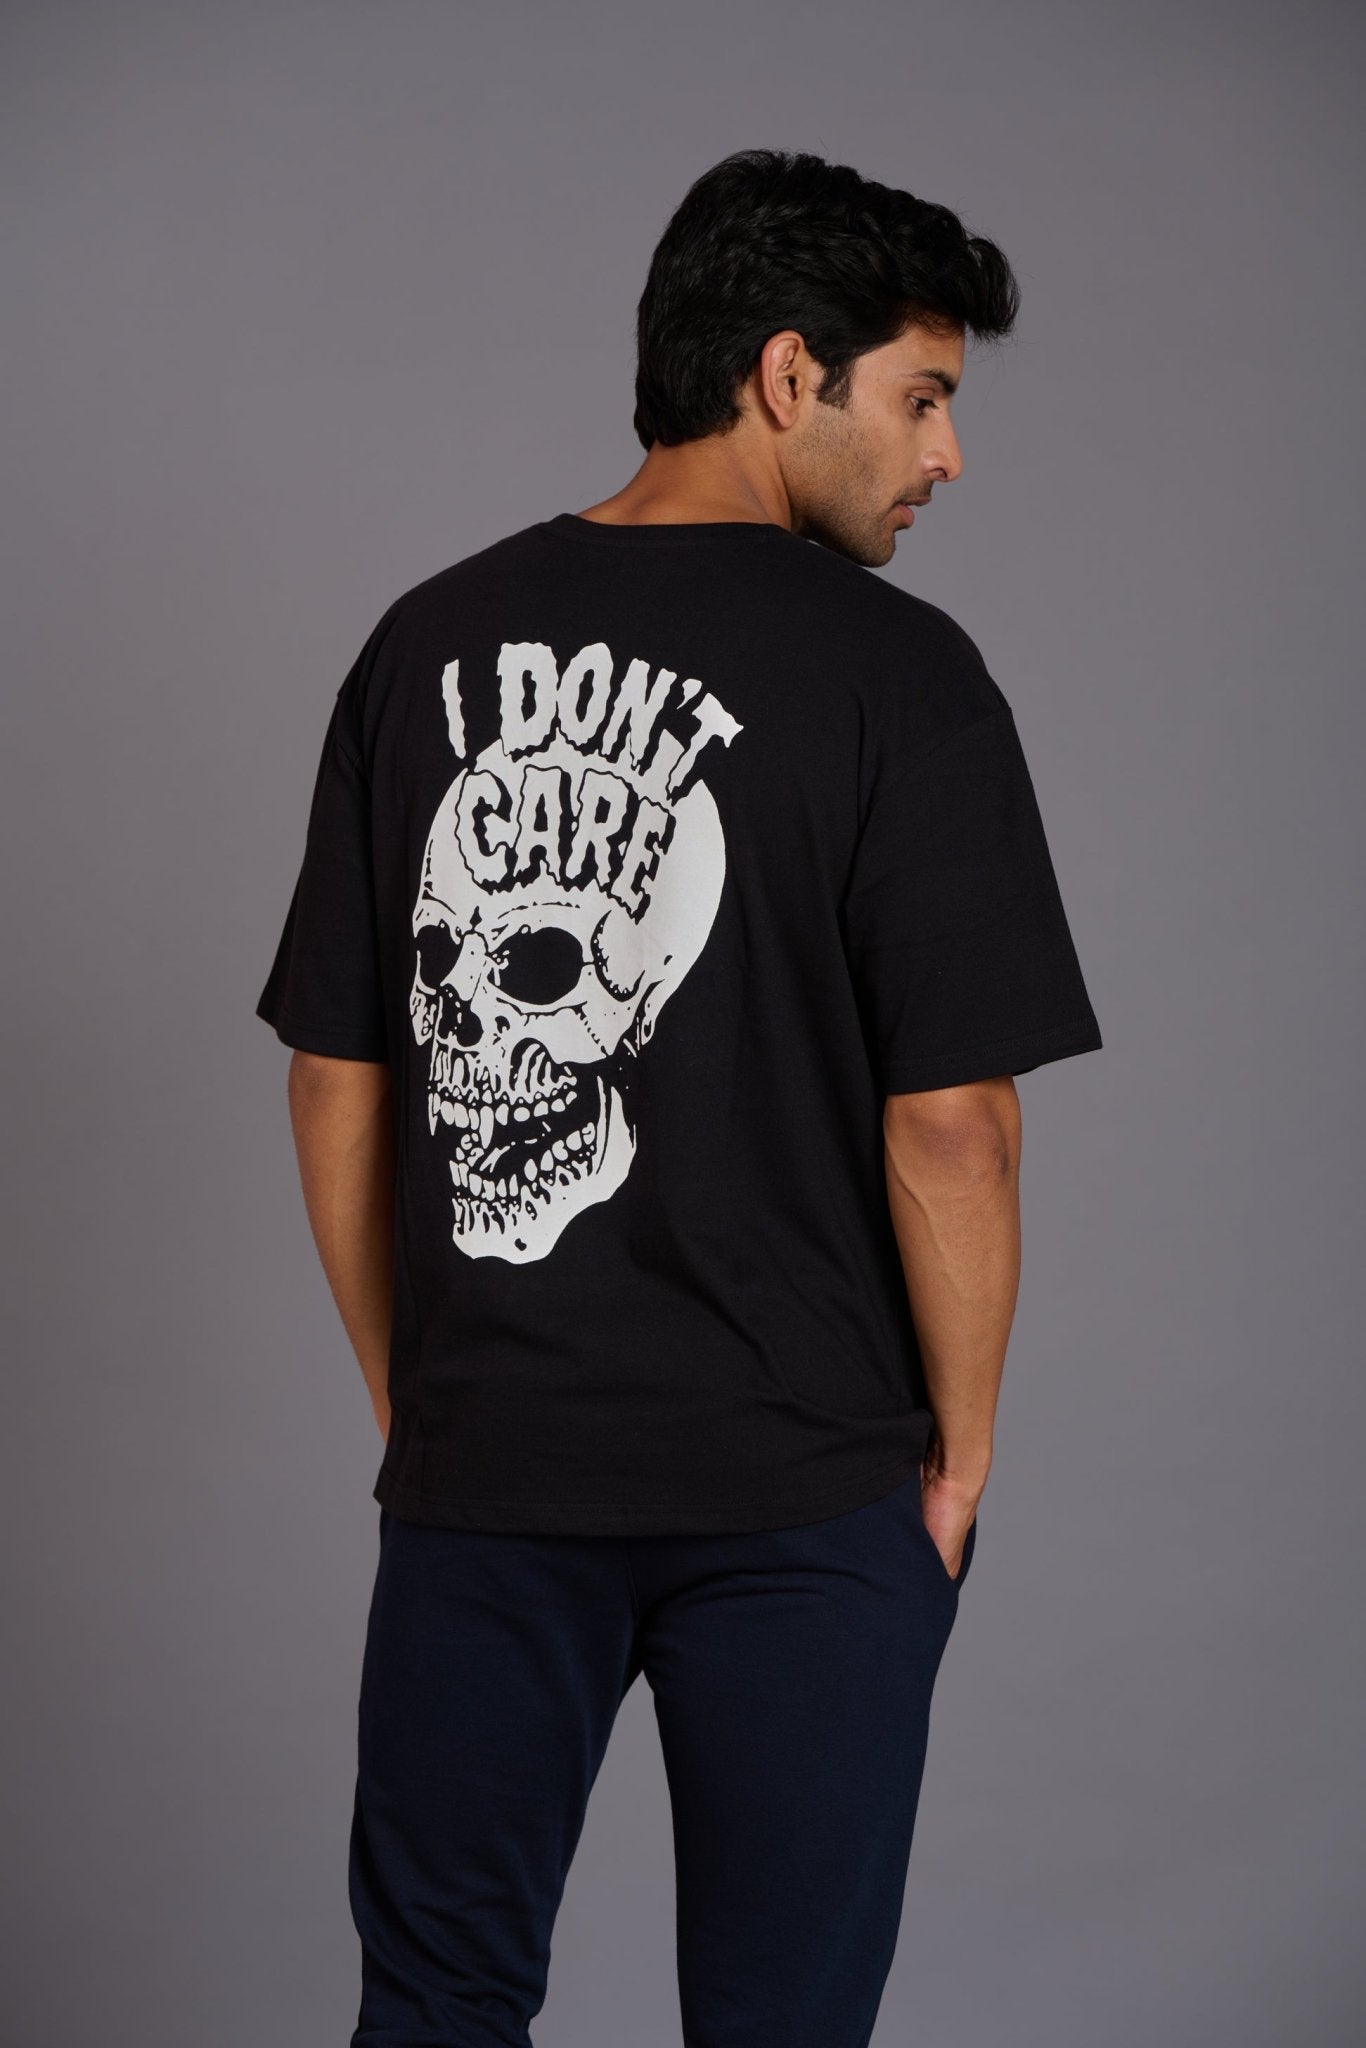 Skull & I Don’t Care White Printed Black Oversized T-Shirt for Men - Go Devil